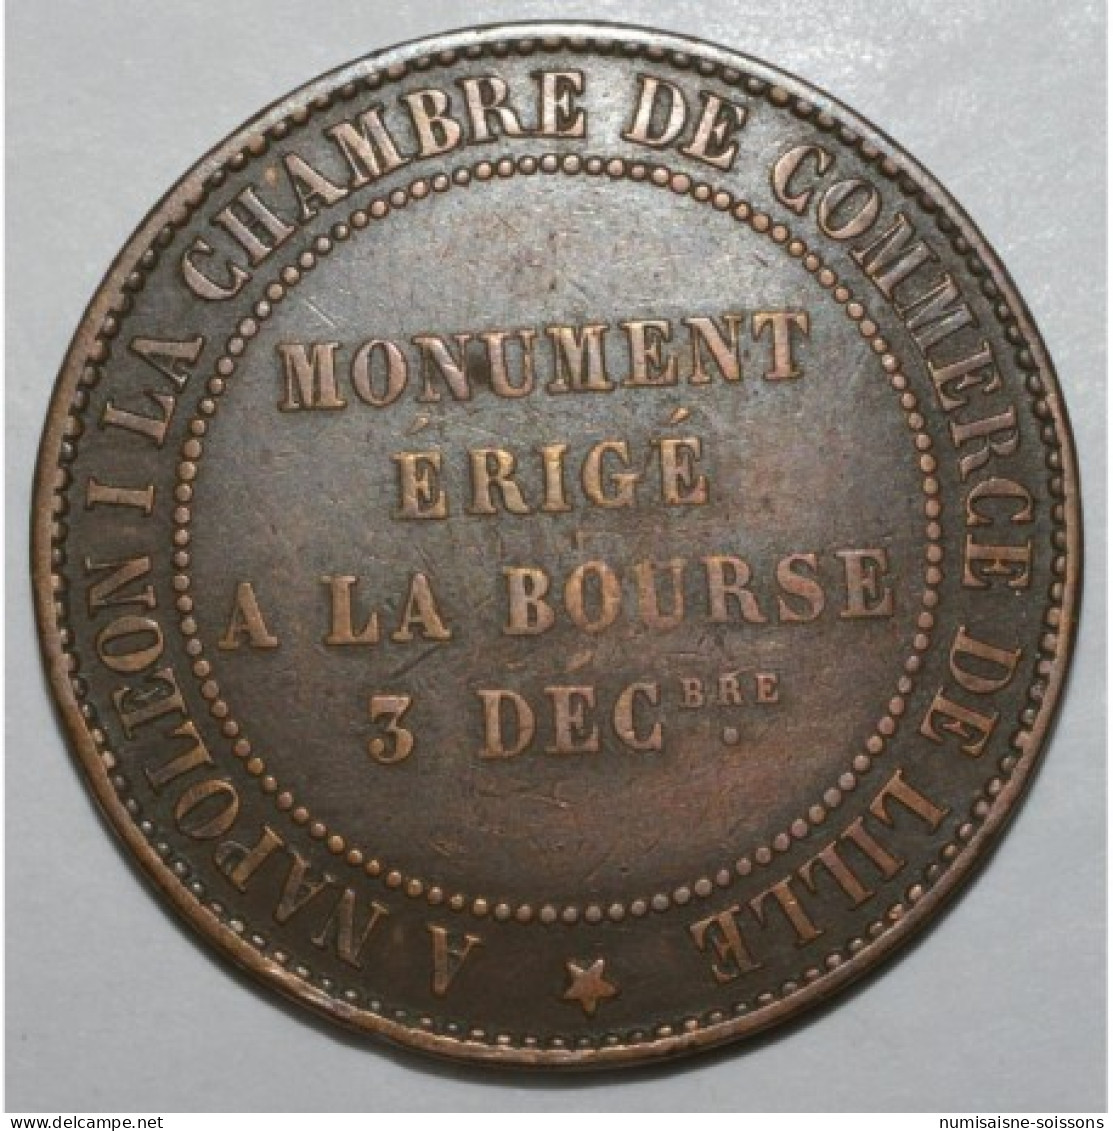 GAOURY 251 - 10 CENTIMES 1854 MODULE - LILLE - MONUMENT ERIGE A LA BOURSE 03.12.1854 - TB - 10 Centimes